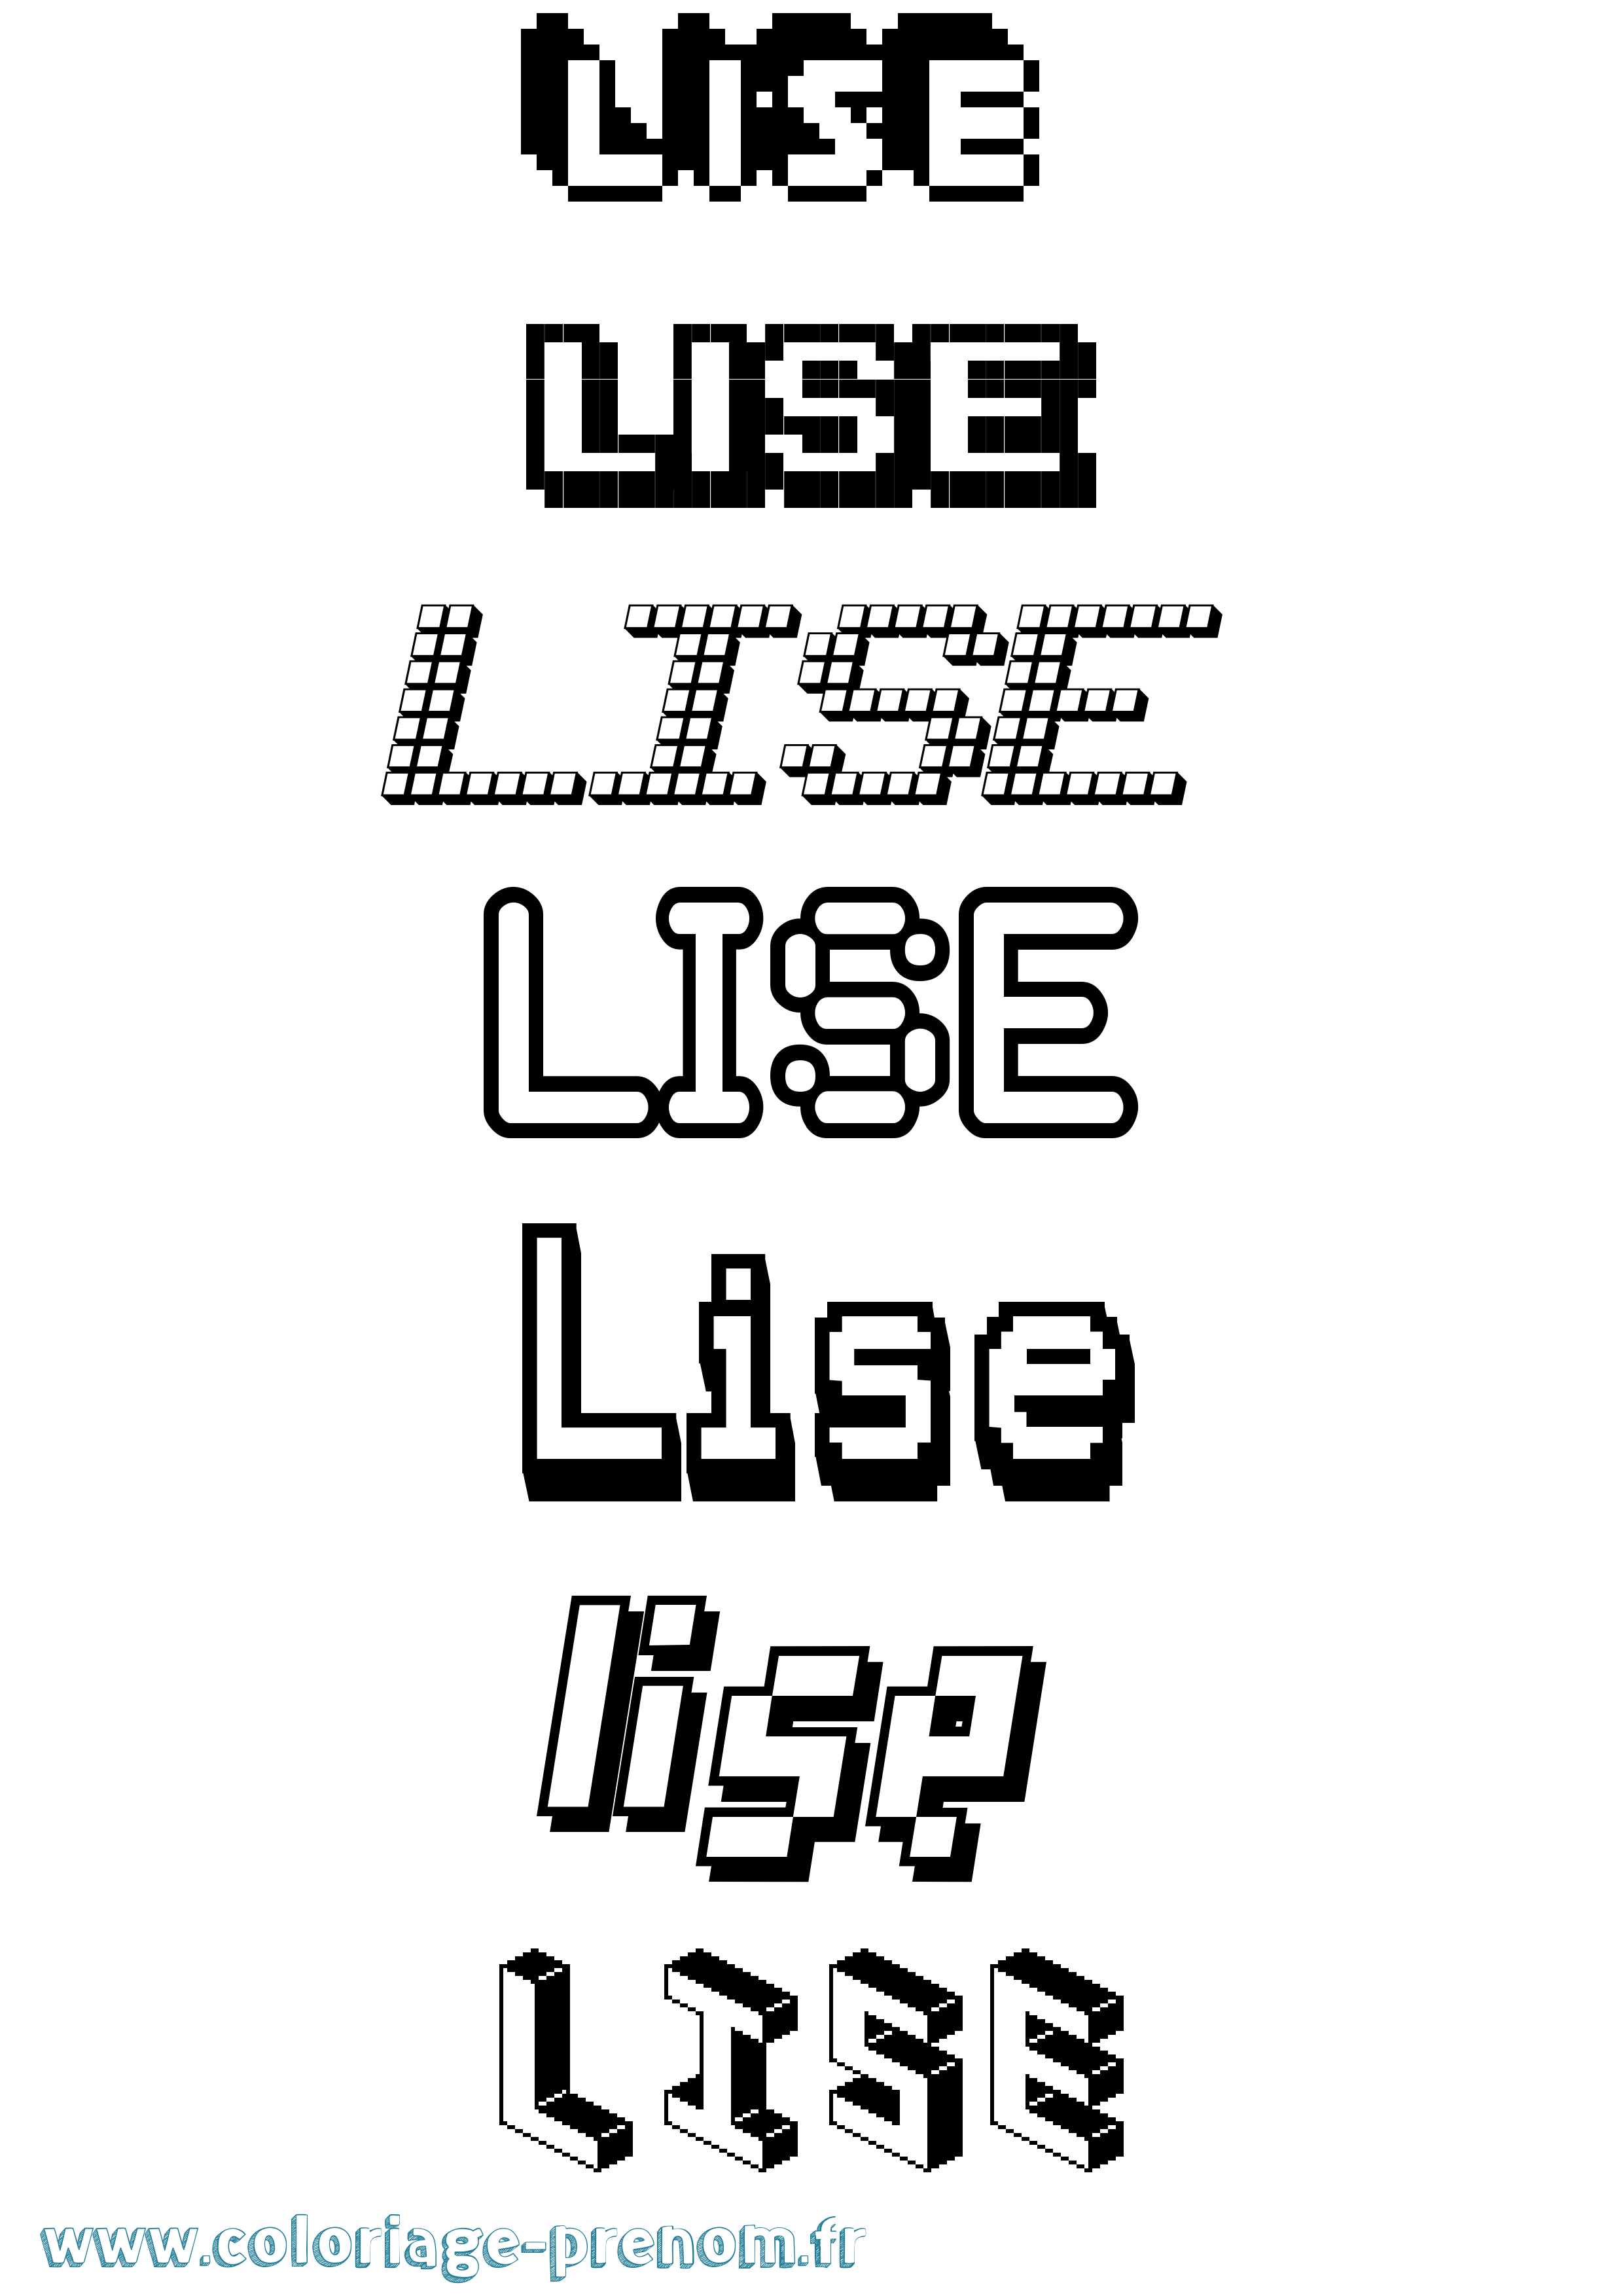 Coloriage prénom Lise Pixel